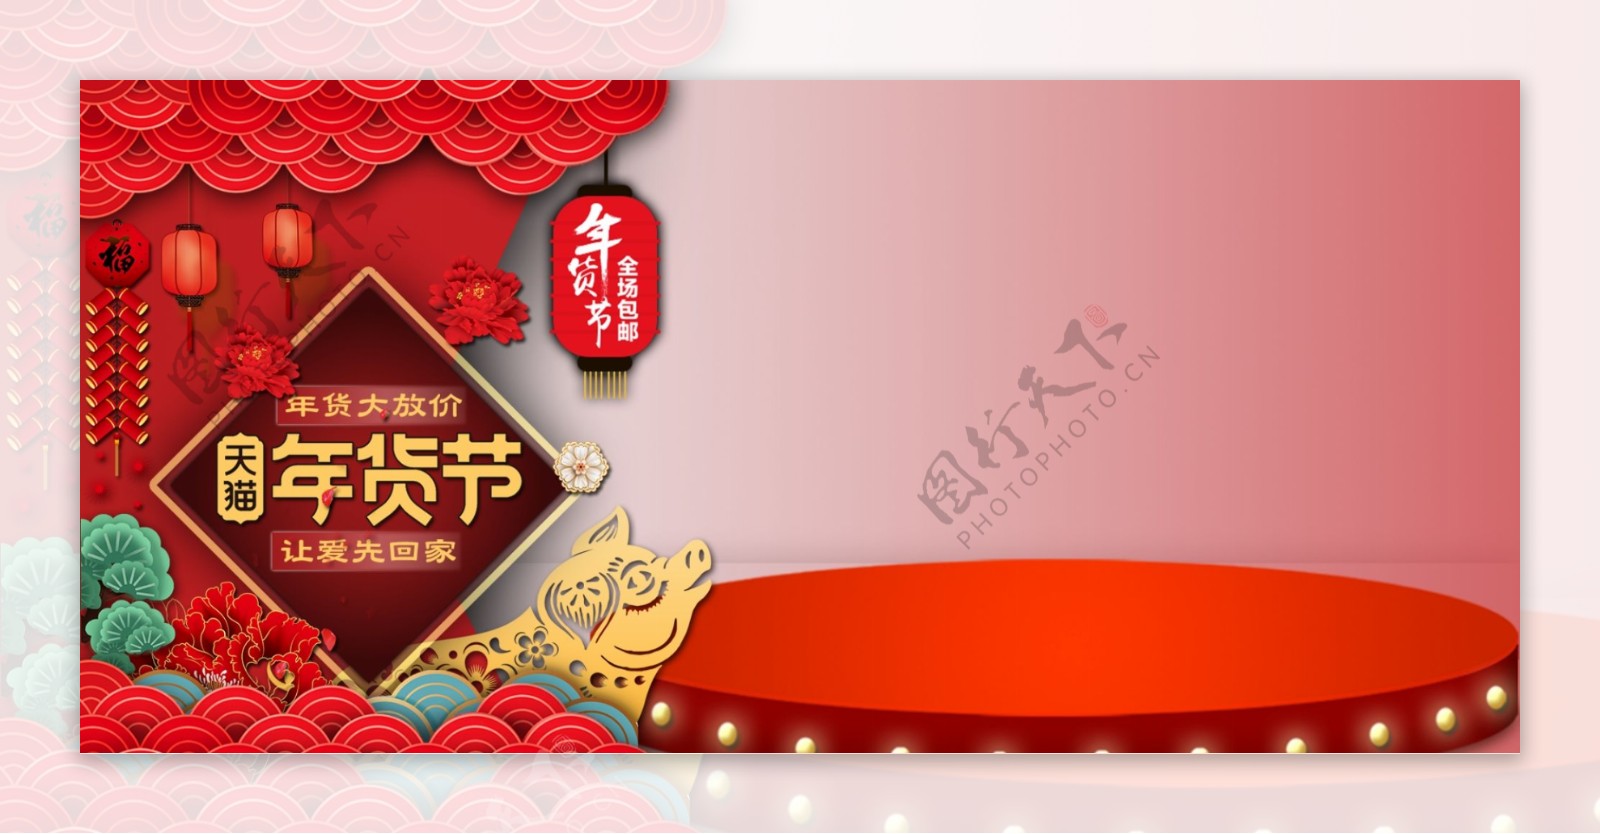 天猫淘宝年货节春节新年活动推广海报模板